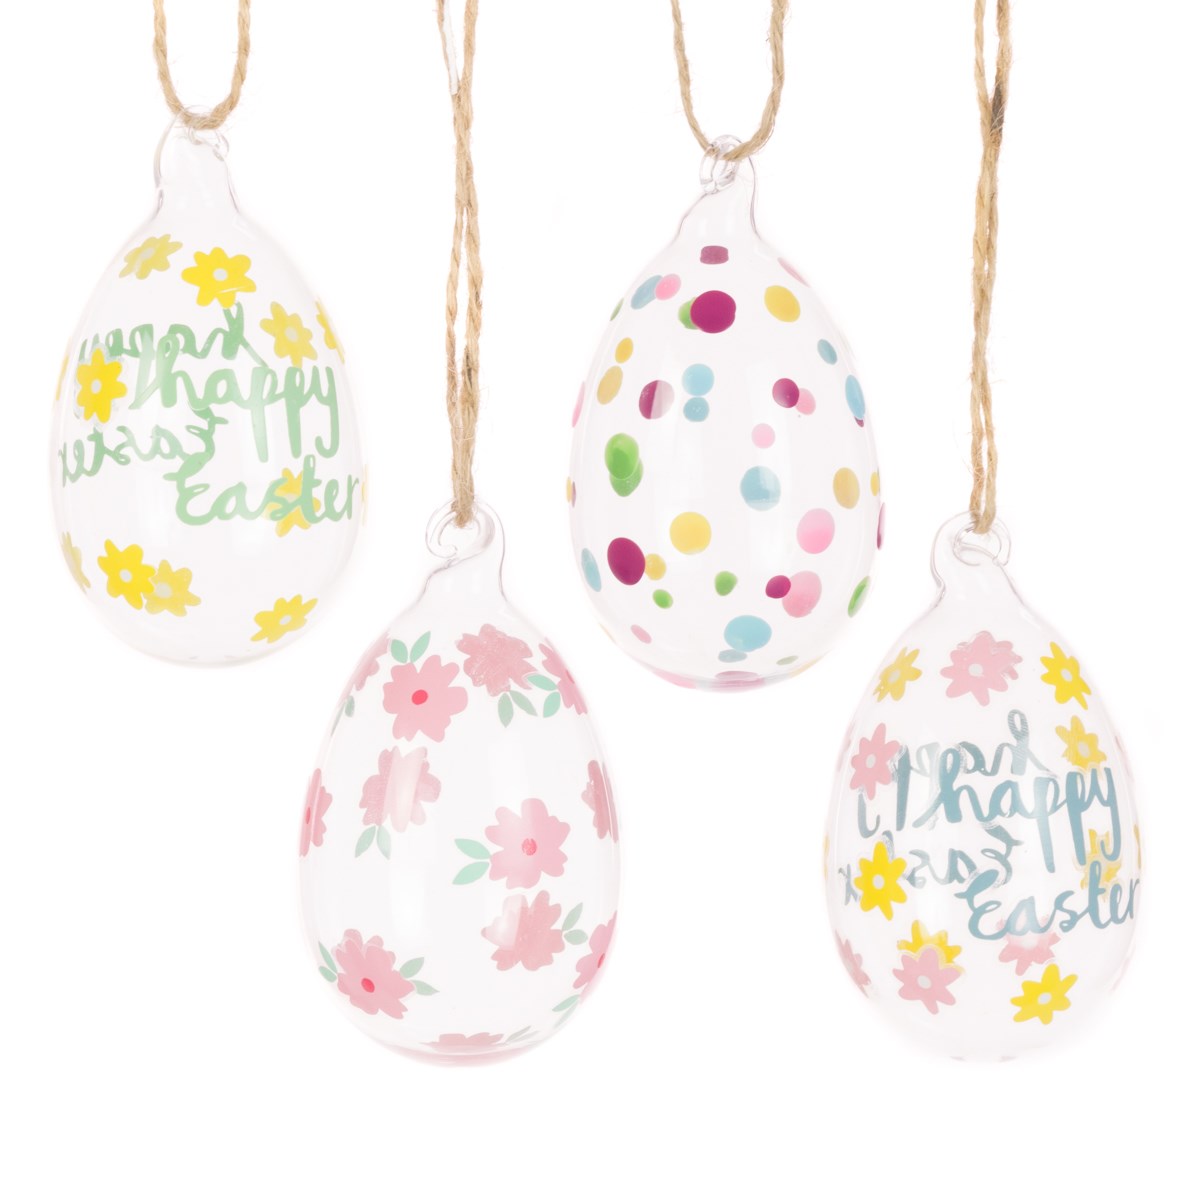 FloralSilk Set of 4 Floral Glass Egg Easter Decorations